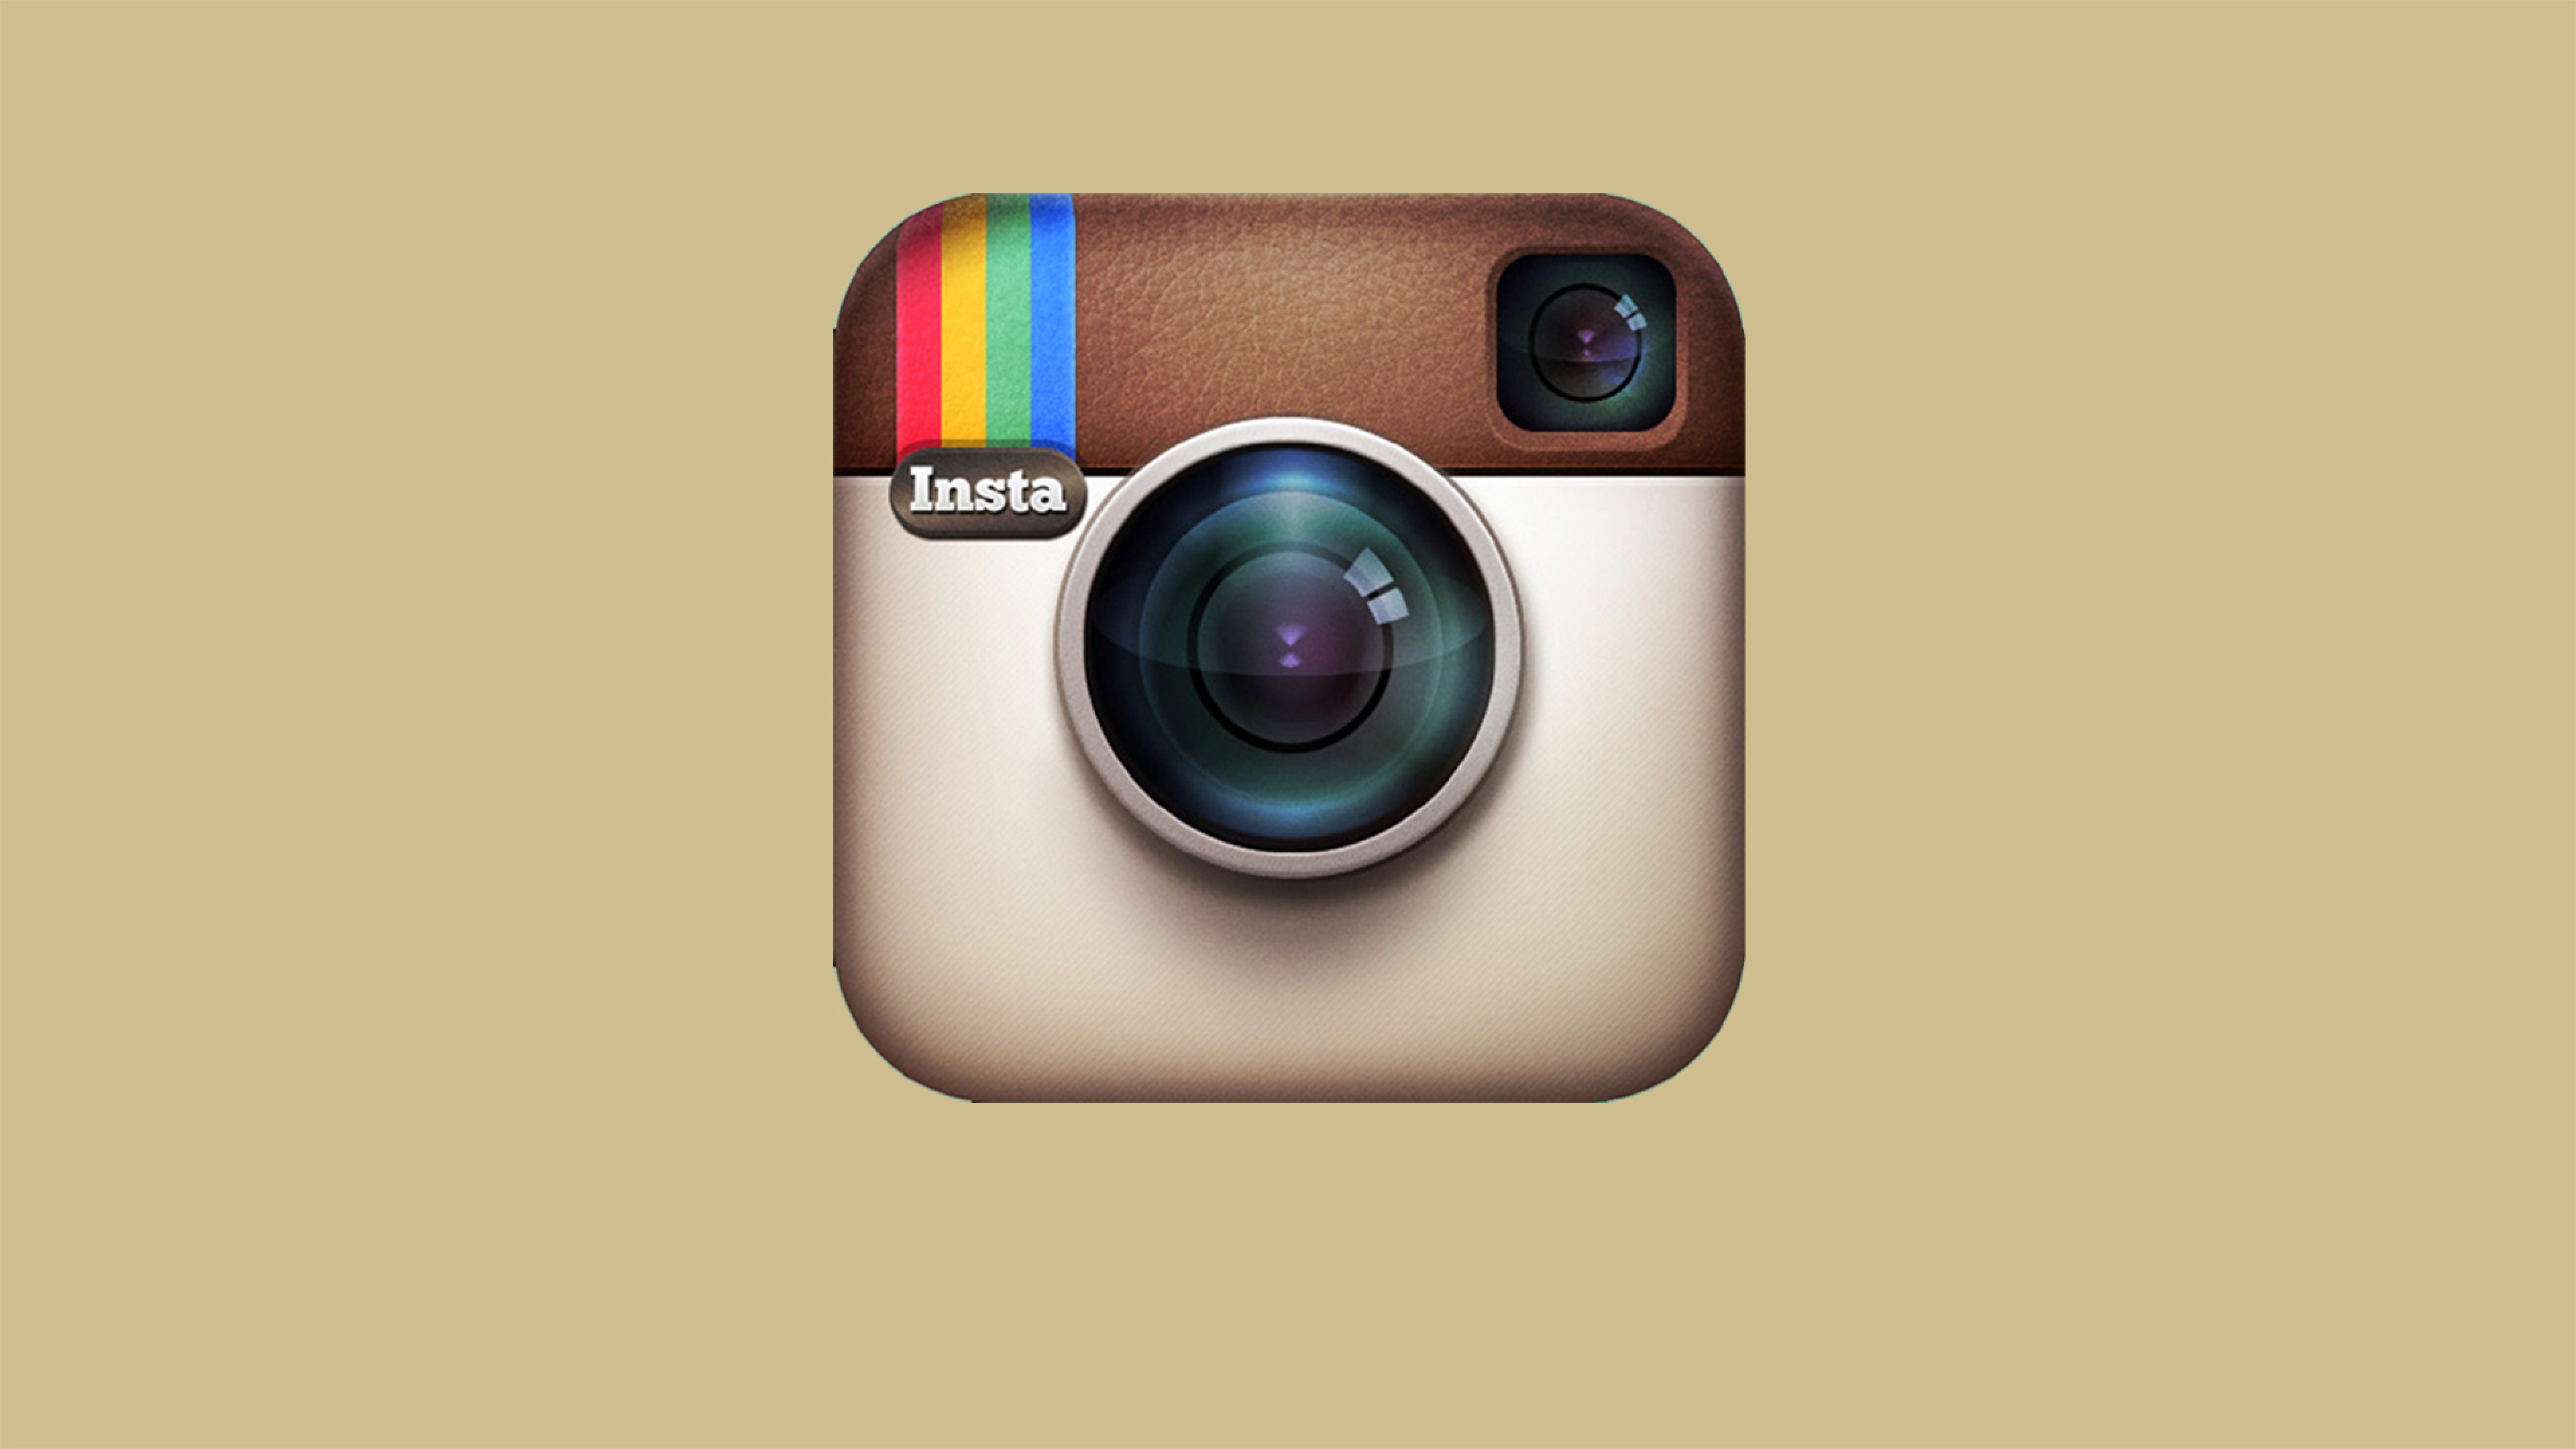 412x732 Instagram Logo In 4k 412x732 Resolution HD 4k Wallpapers ...